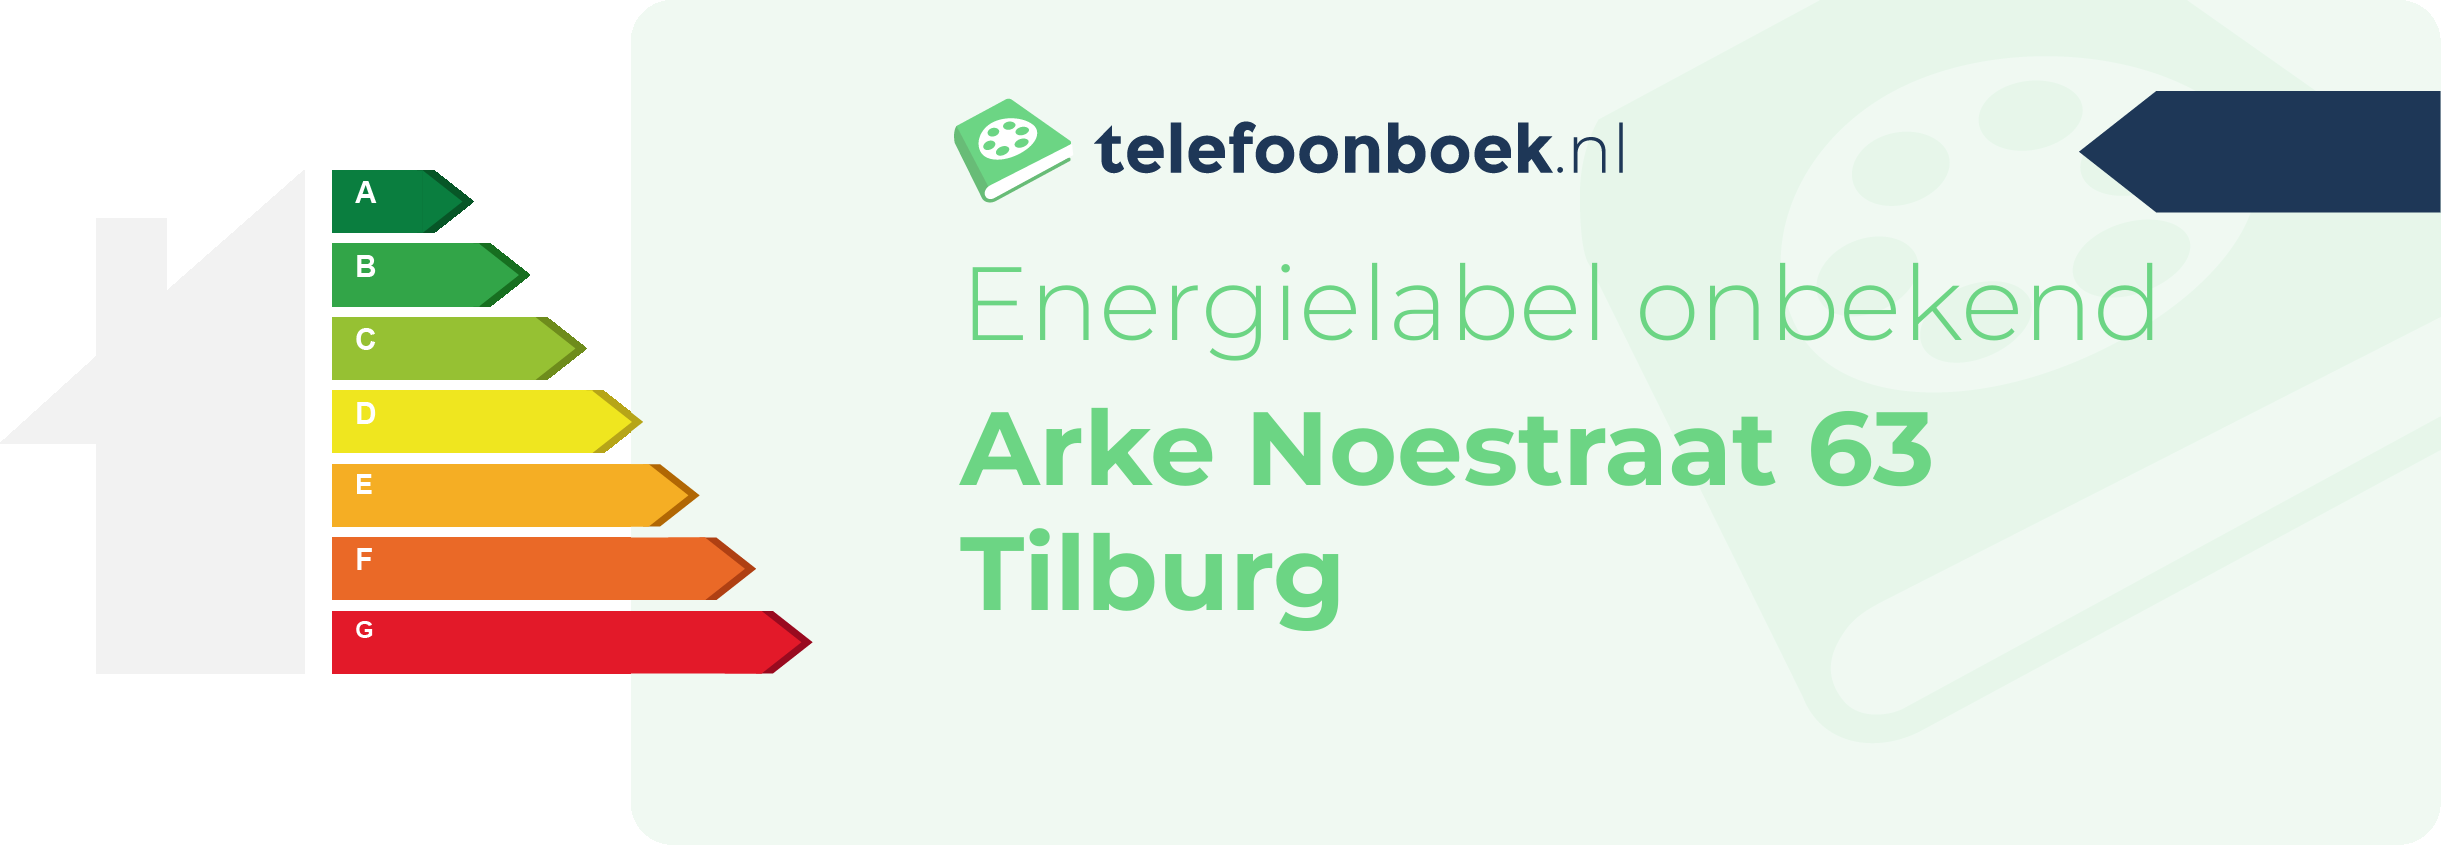 Energielabel Arke Noestraat 63 Tilburg